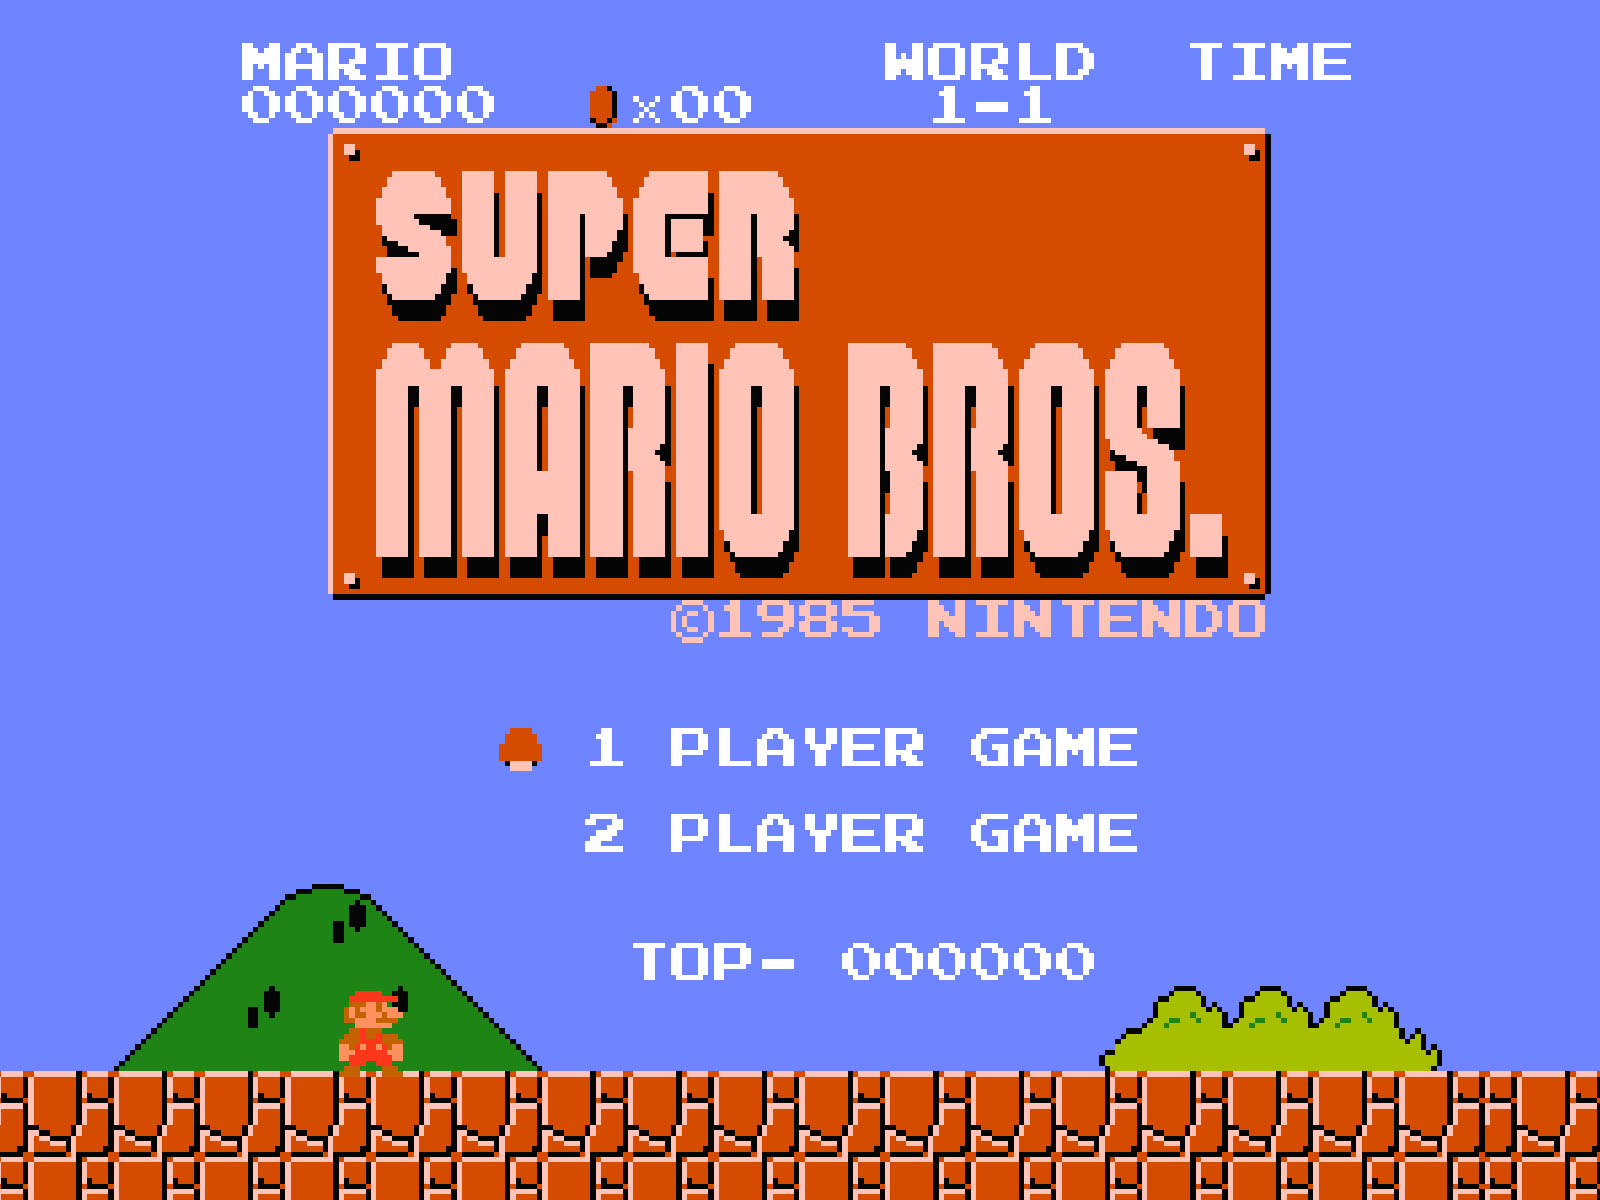 Conheça a história do herói de Super Mario Bros